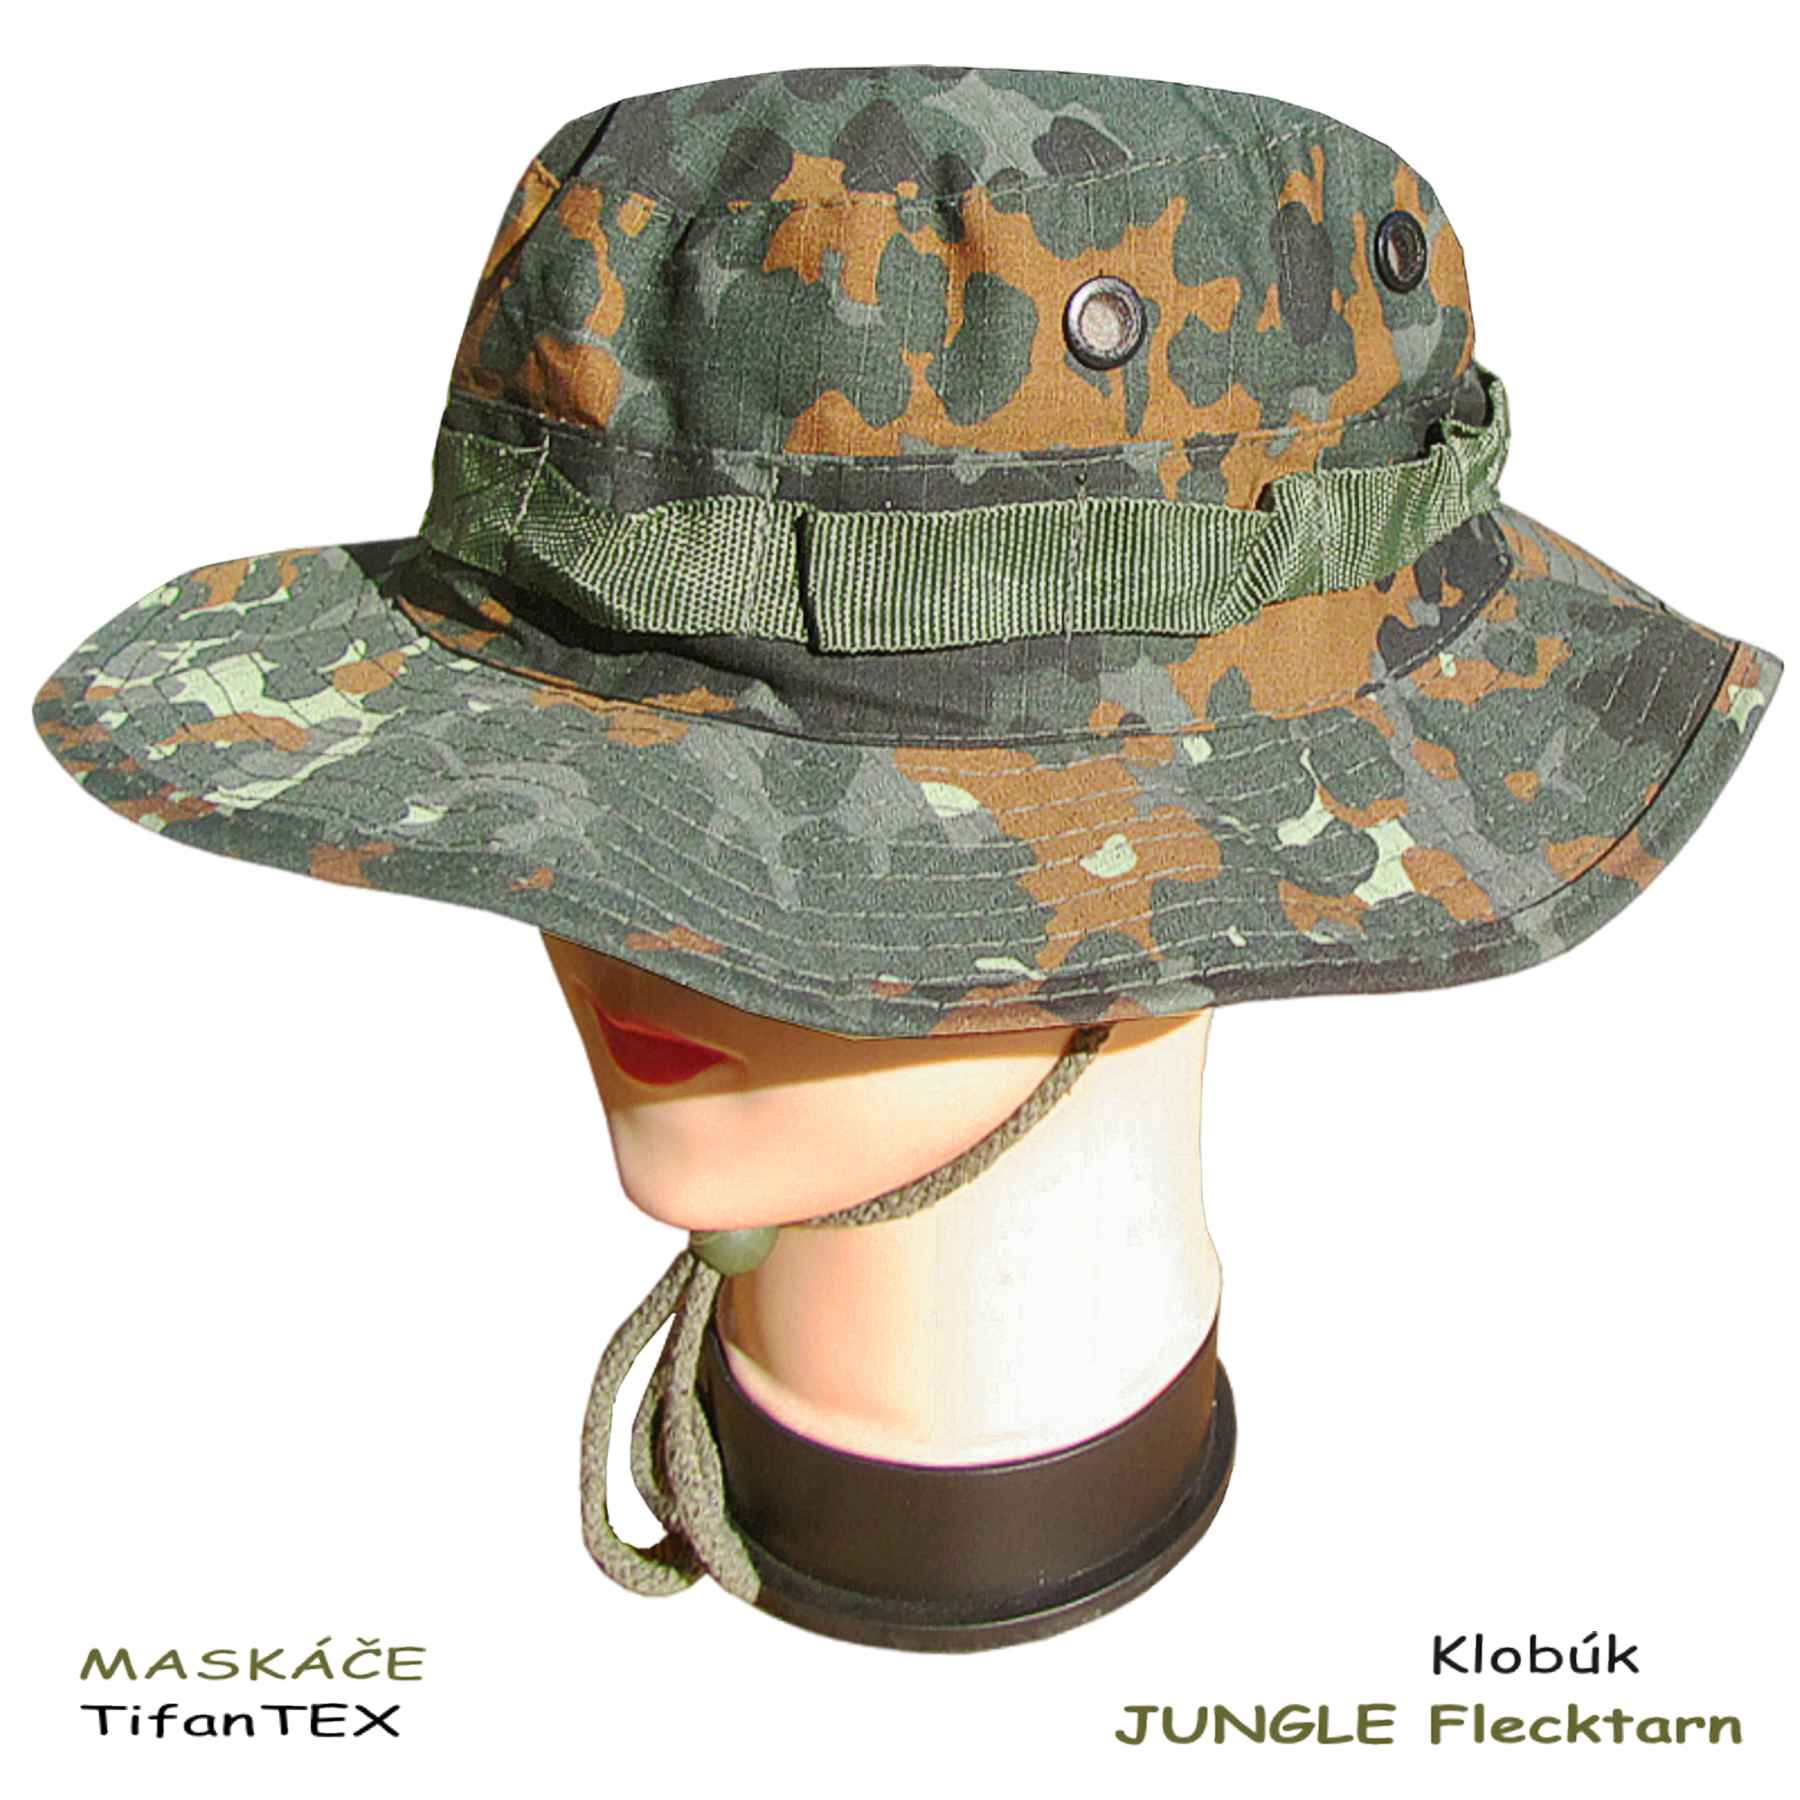 Vojenský maskáčový klobúk JUNGLE flecktarn, maskáče Tifantex